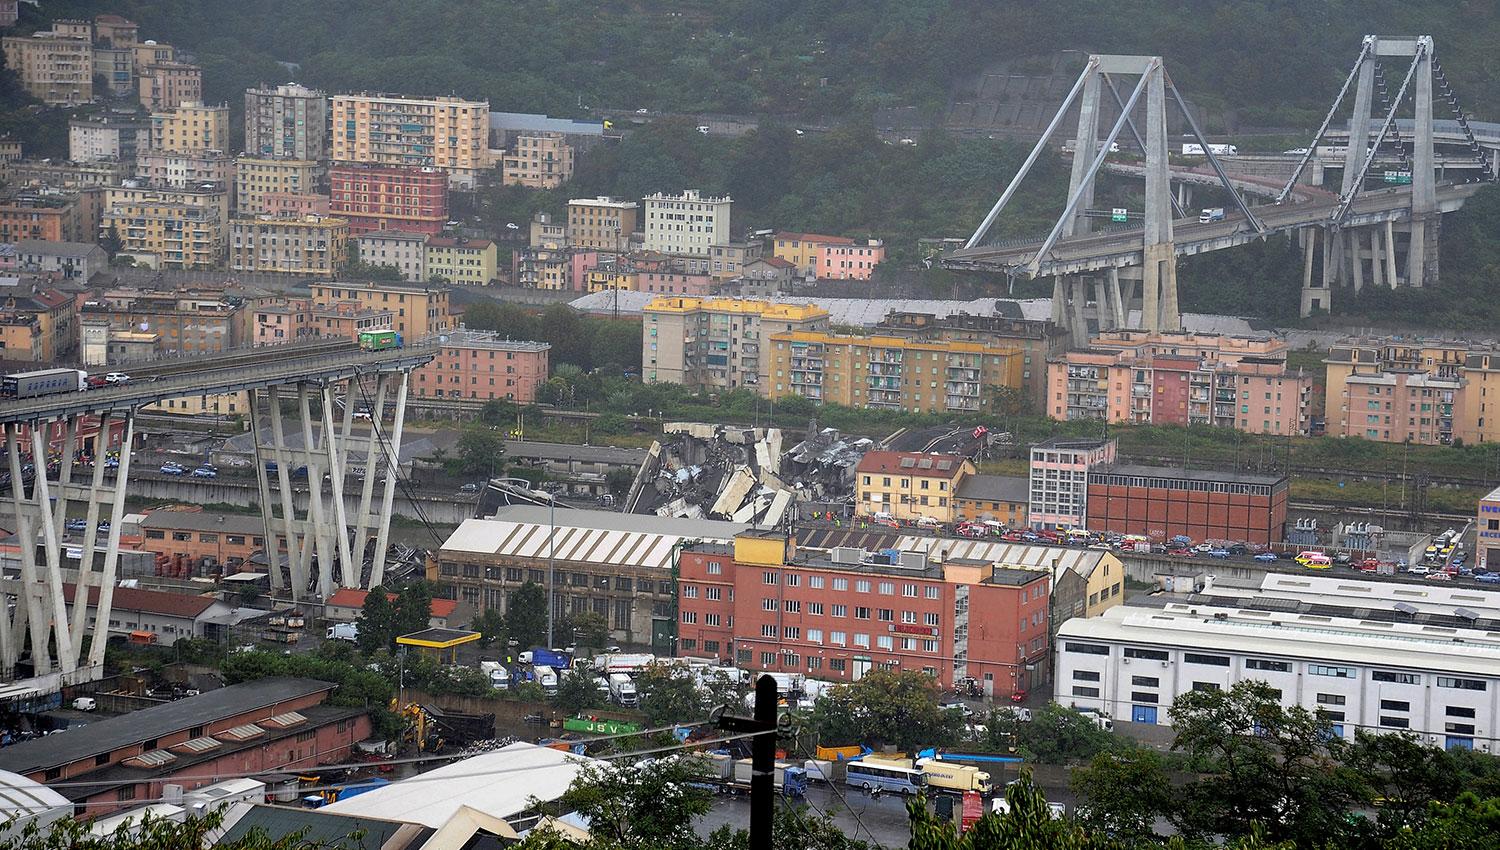 Una tucumana contó que estuvo a minutos de pasar por el puente que se derrumbó en Génova